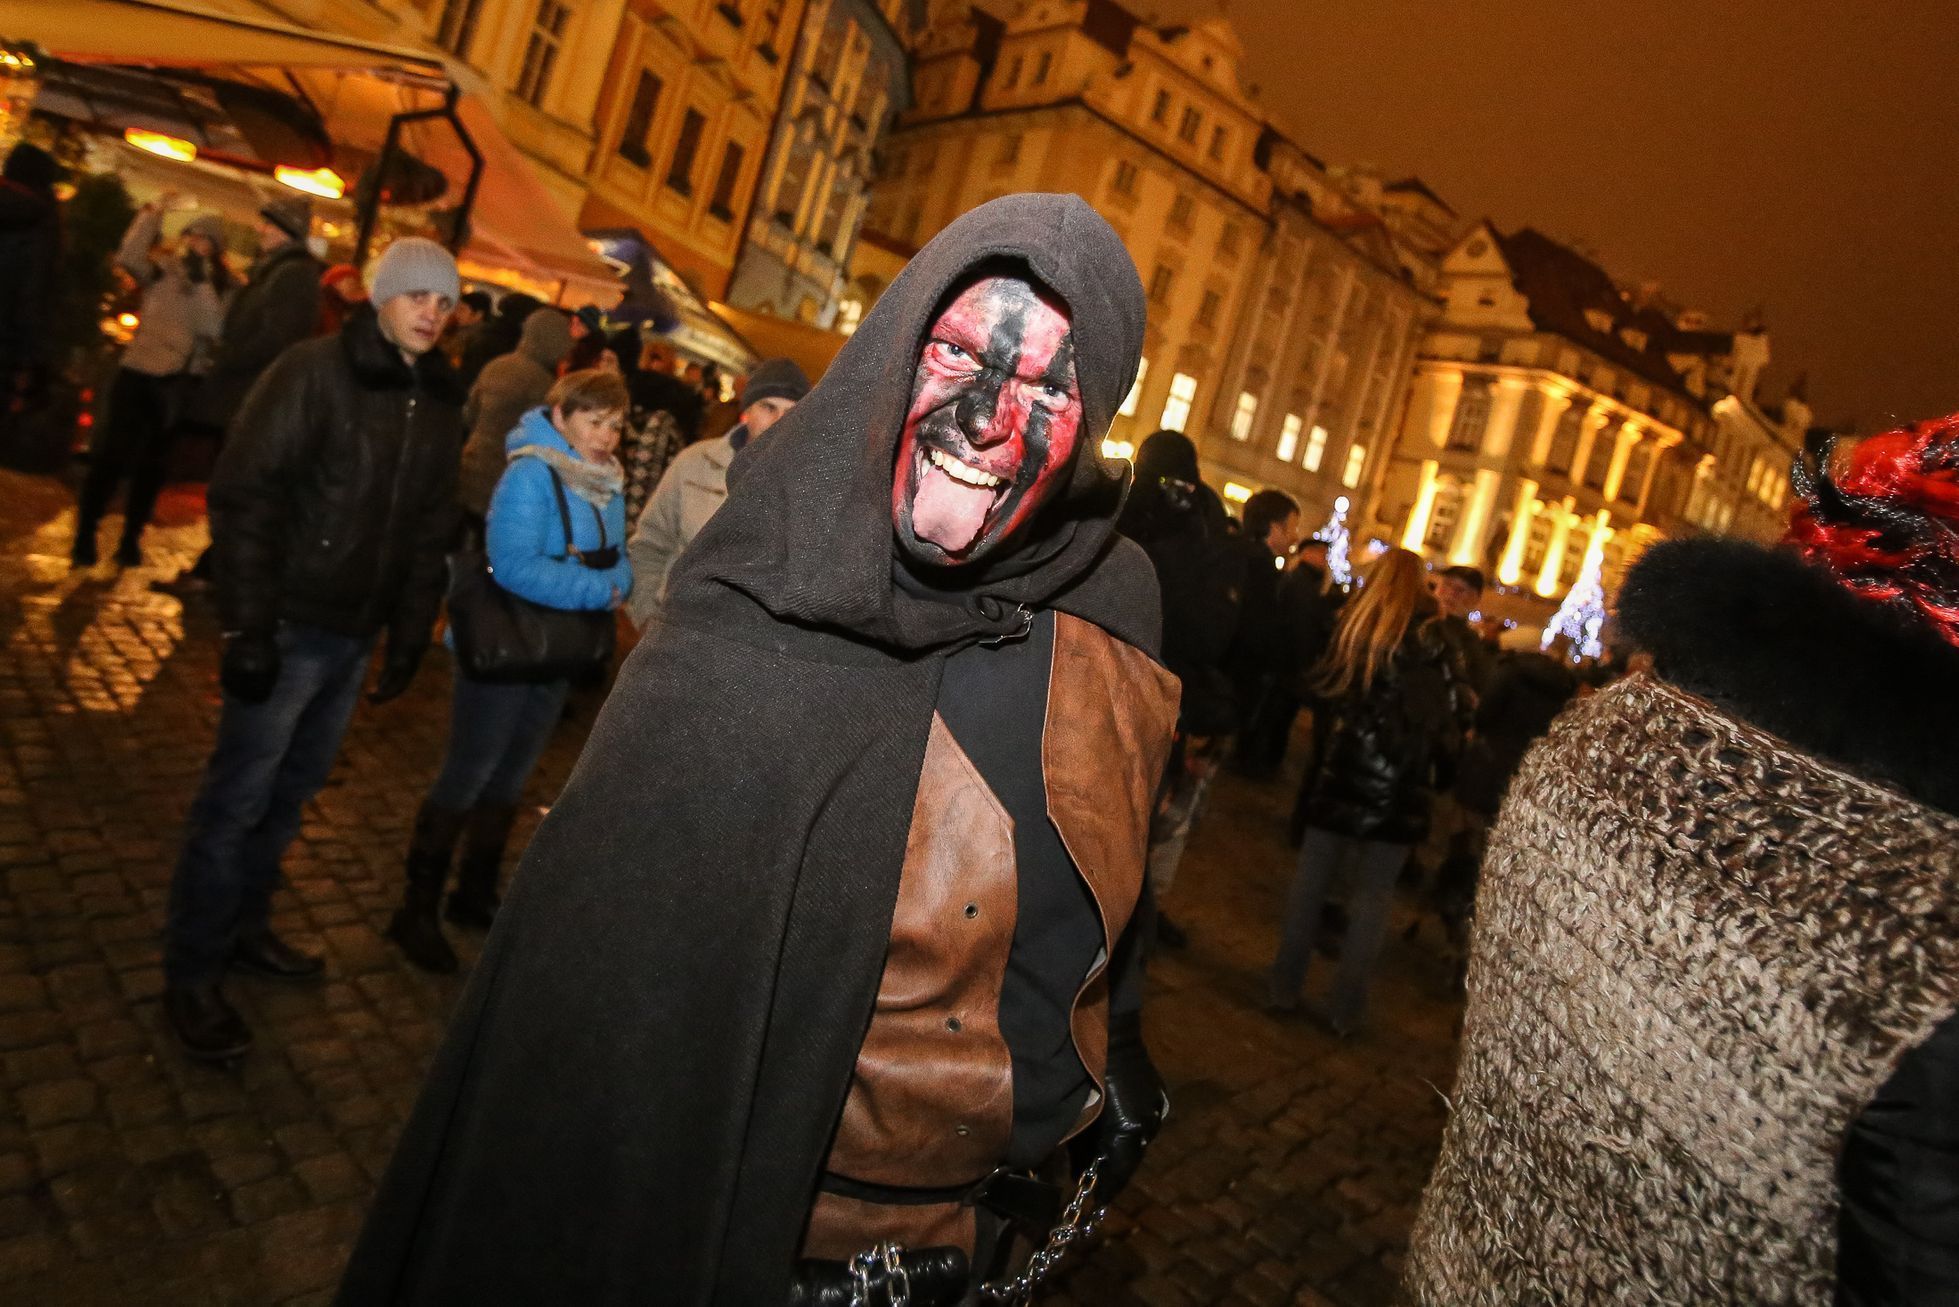 Čerti a Mikuláš 5. prosince 2016 na Staroměstském náměstí